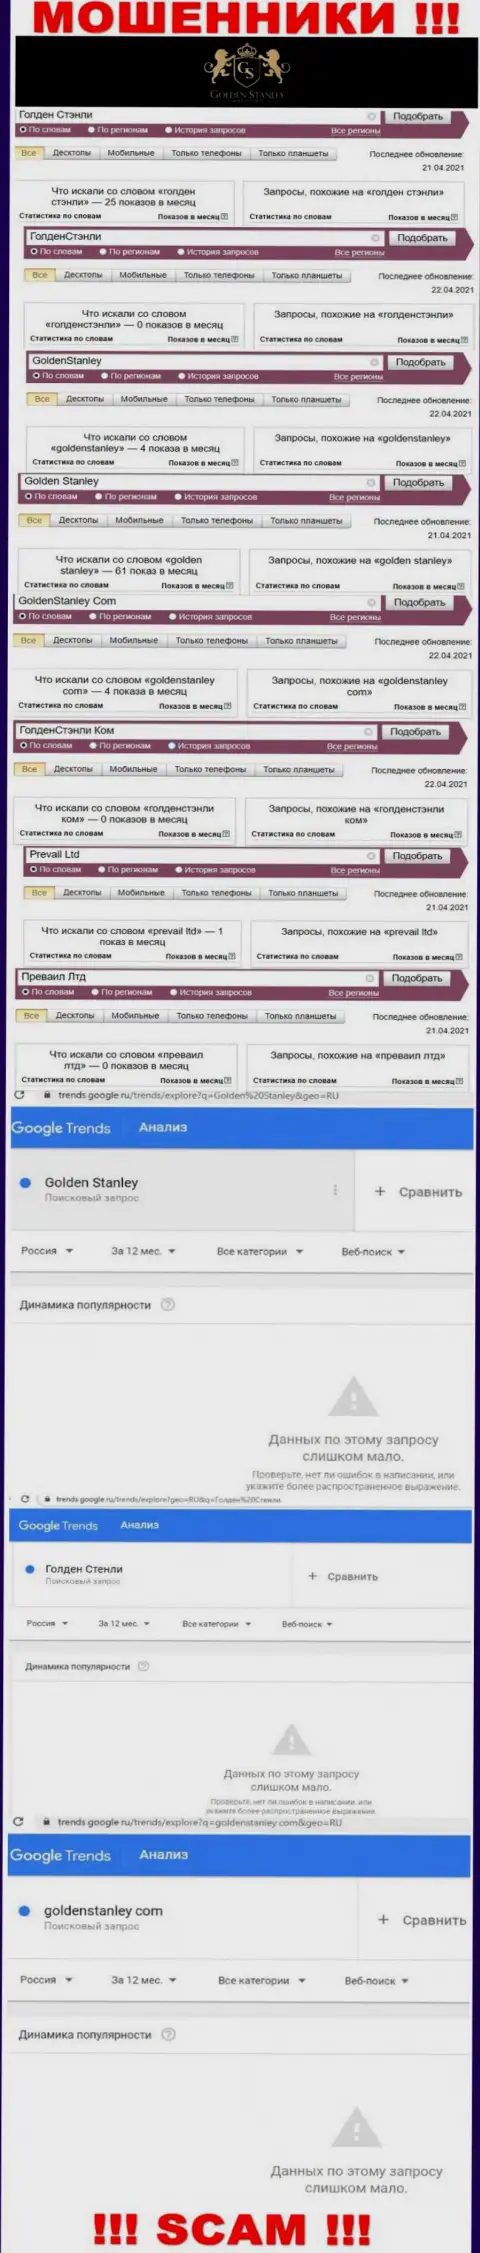 Статистические данные онлайн-запросов в поисковиках касательно мошенников GoldenStanley